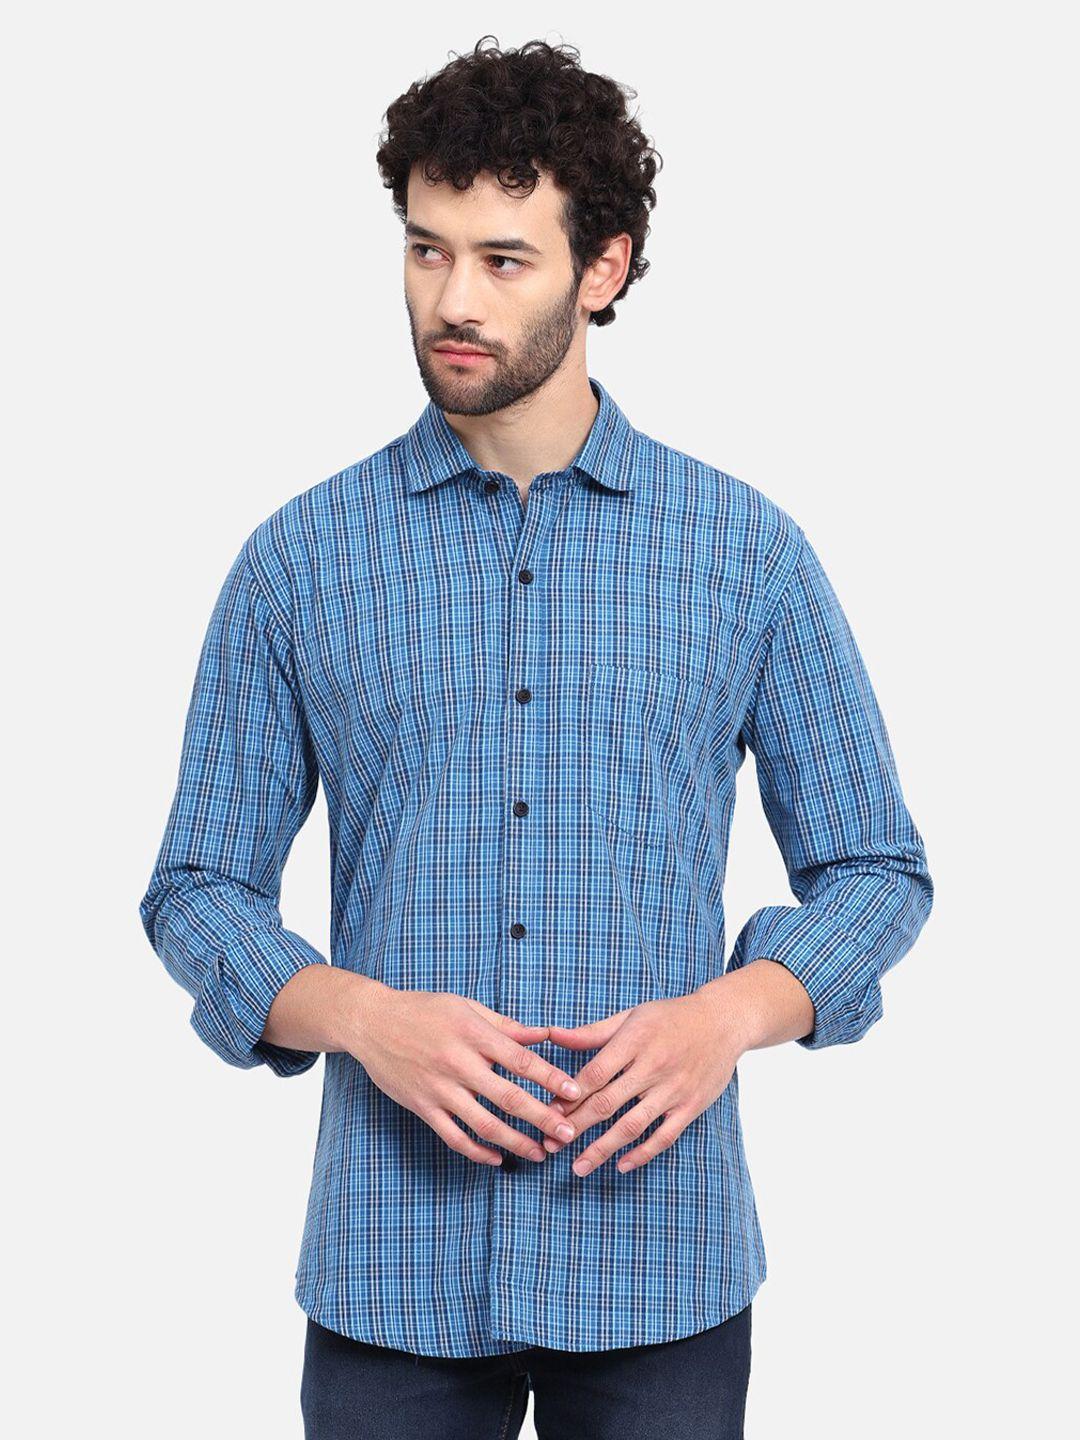 dezano premium micro checked cotton casual shirt